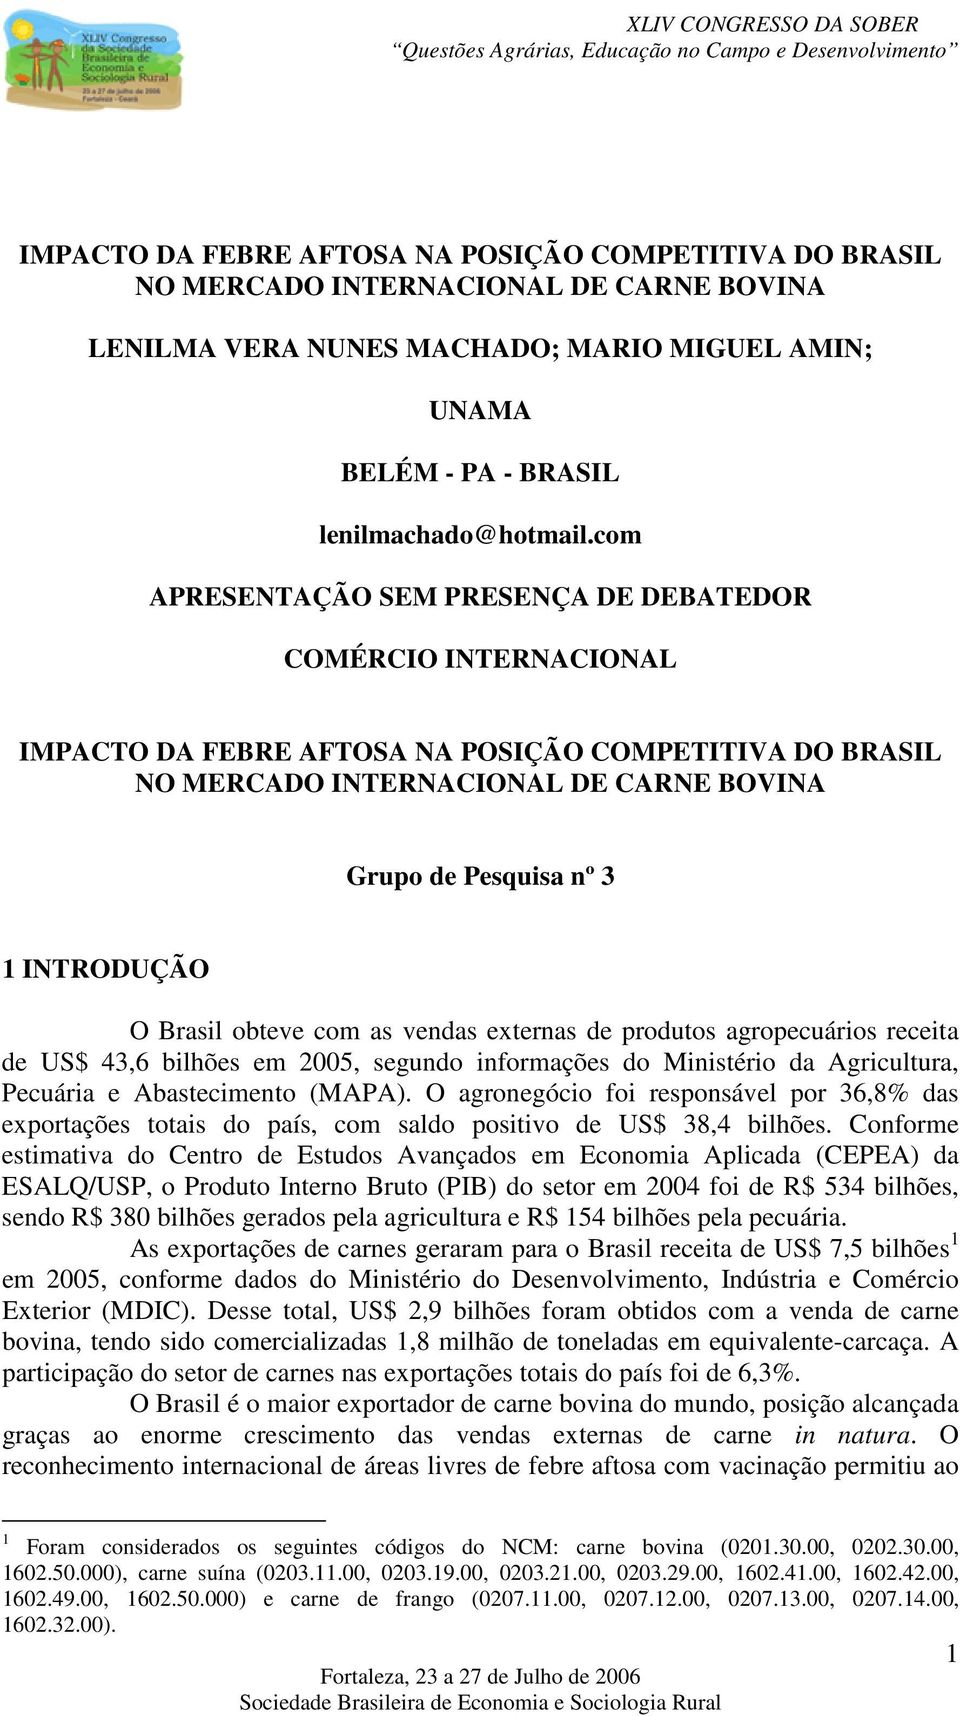 O Brasil obteve com as vendas externas de produtos agropecuários receita de US$ 43,6 bilhões em 2005, segundo informações do Ministério da Agricultura, Pecuária e Abastecimento (MAPA).